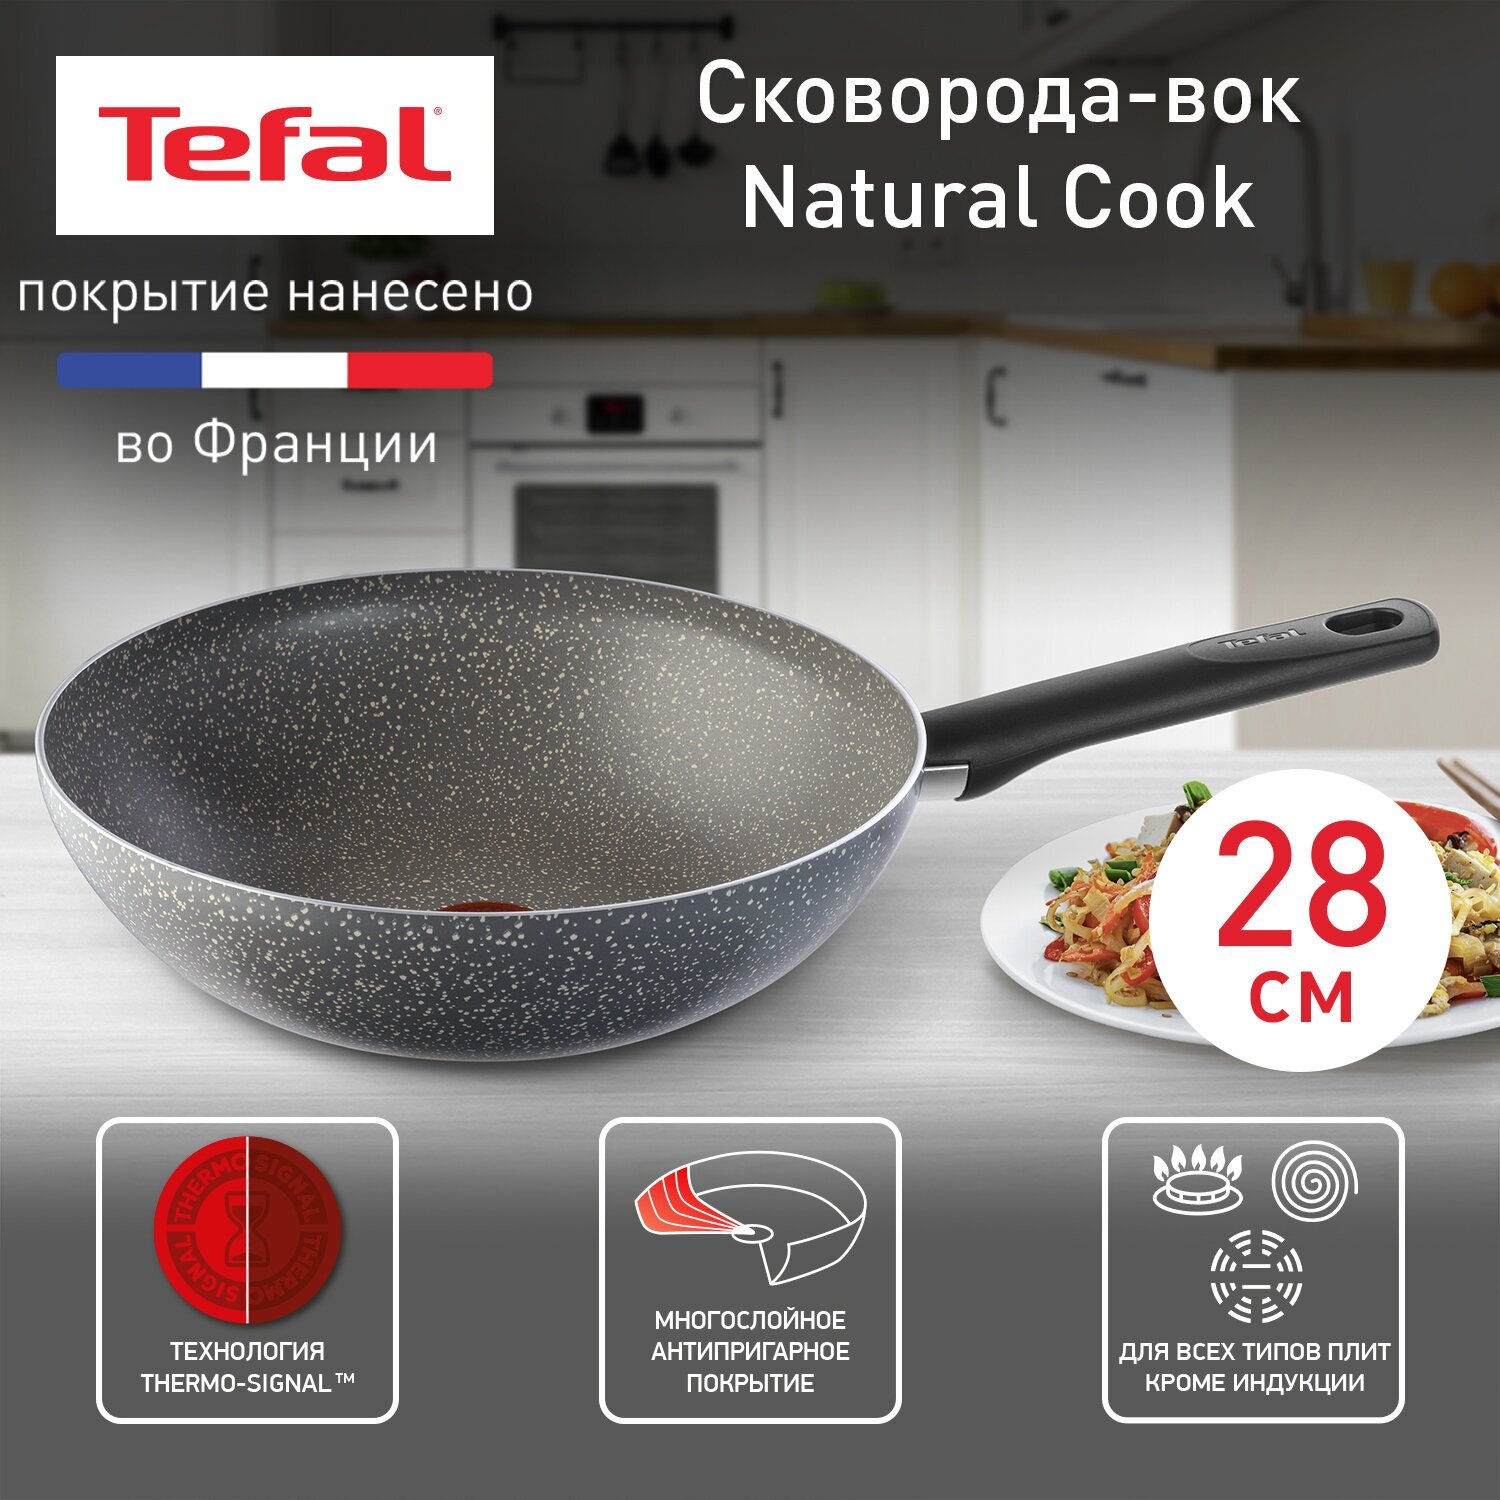 Сковорода вок Tefal Natural Cook 04211628 диаметр 28 см с индикатором температуры и антипригарным покрытием для газовых электрических плит